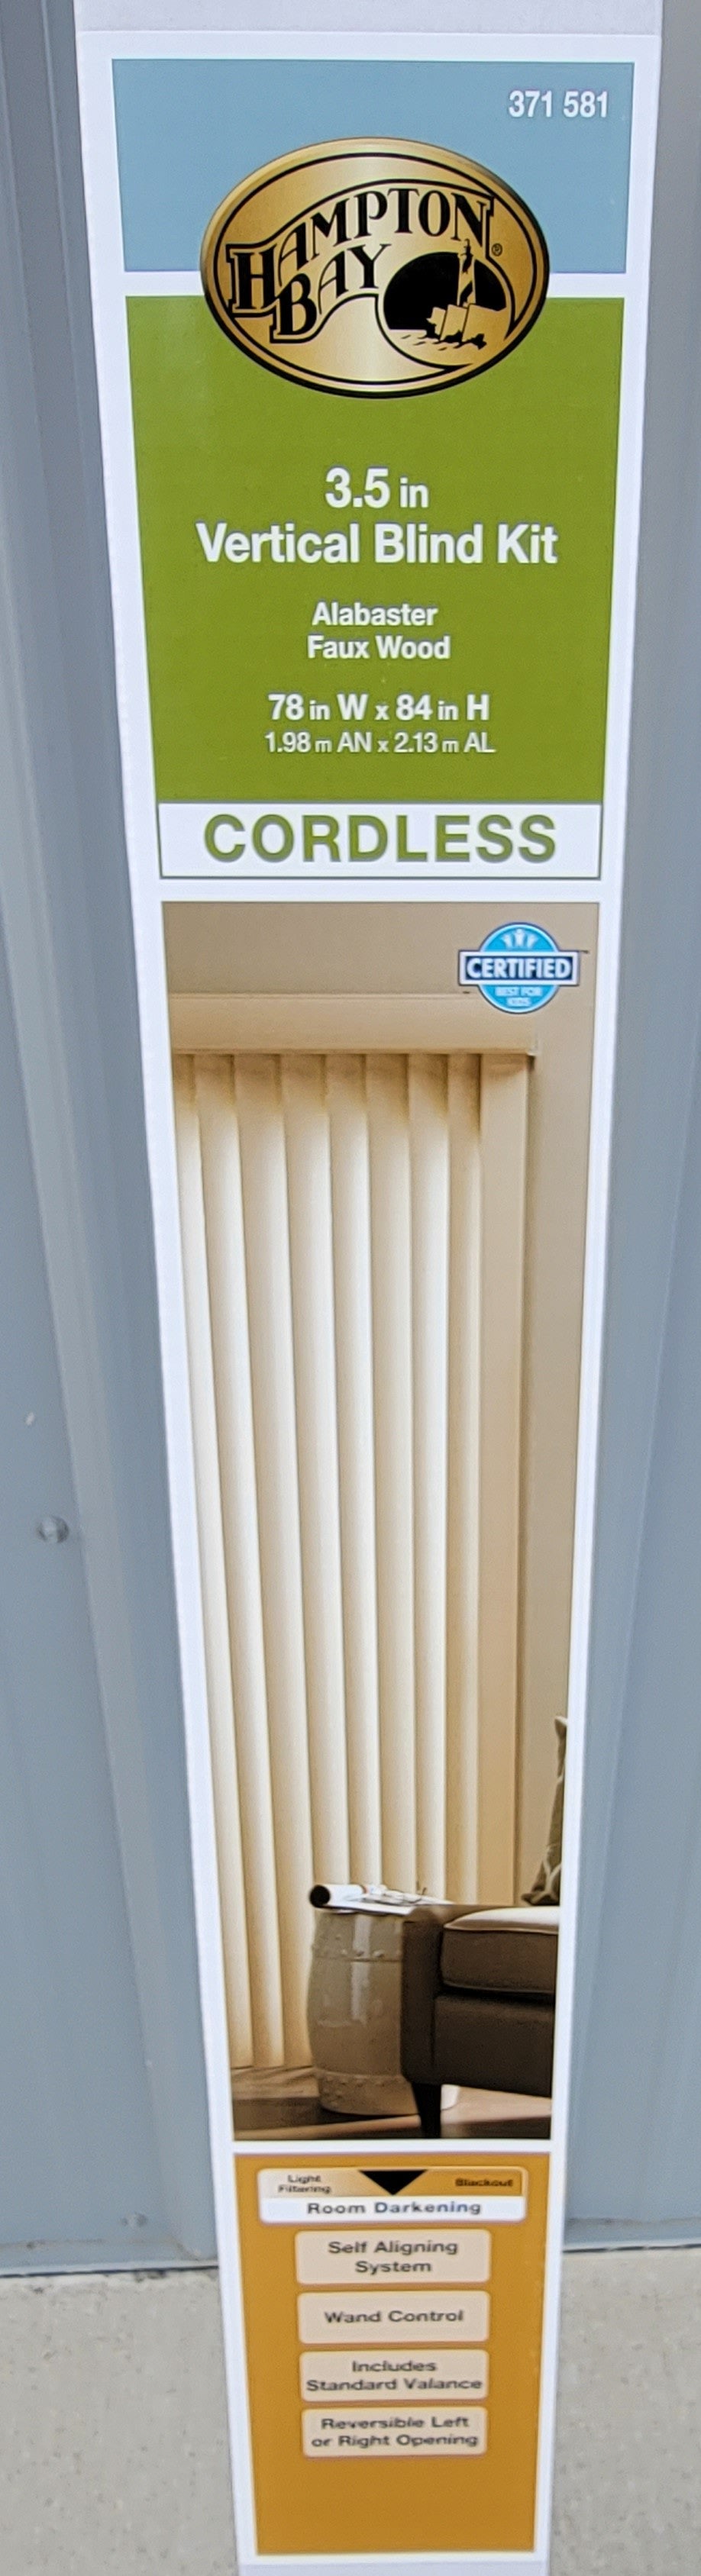 Hampton Bay Alabaster Vertical Blind Kit Sliding Door Patio Window 78